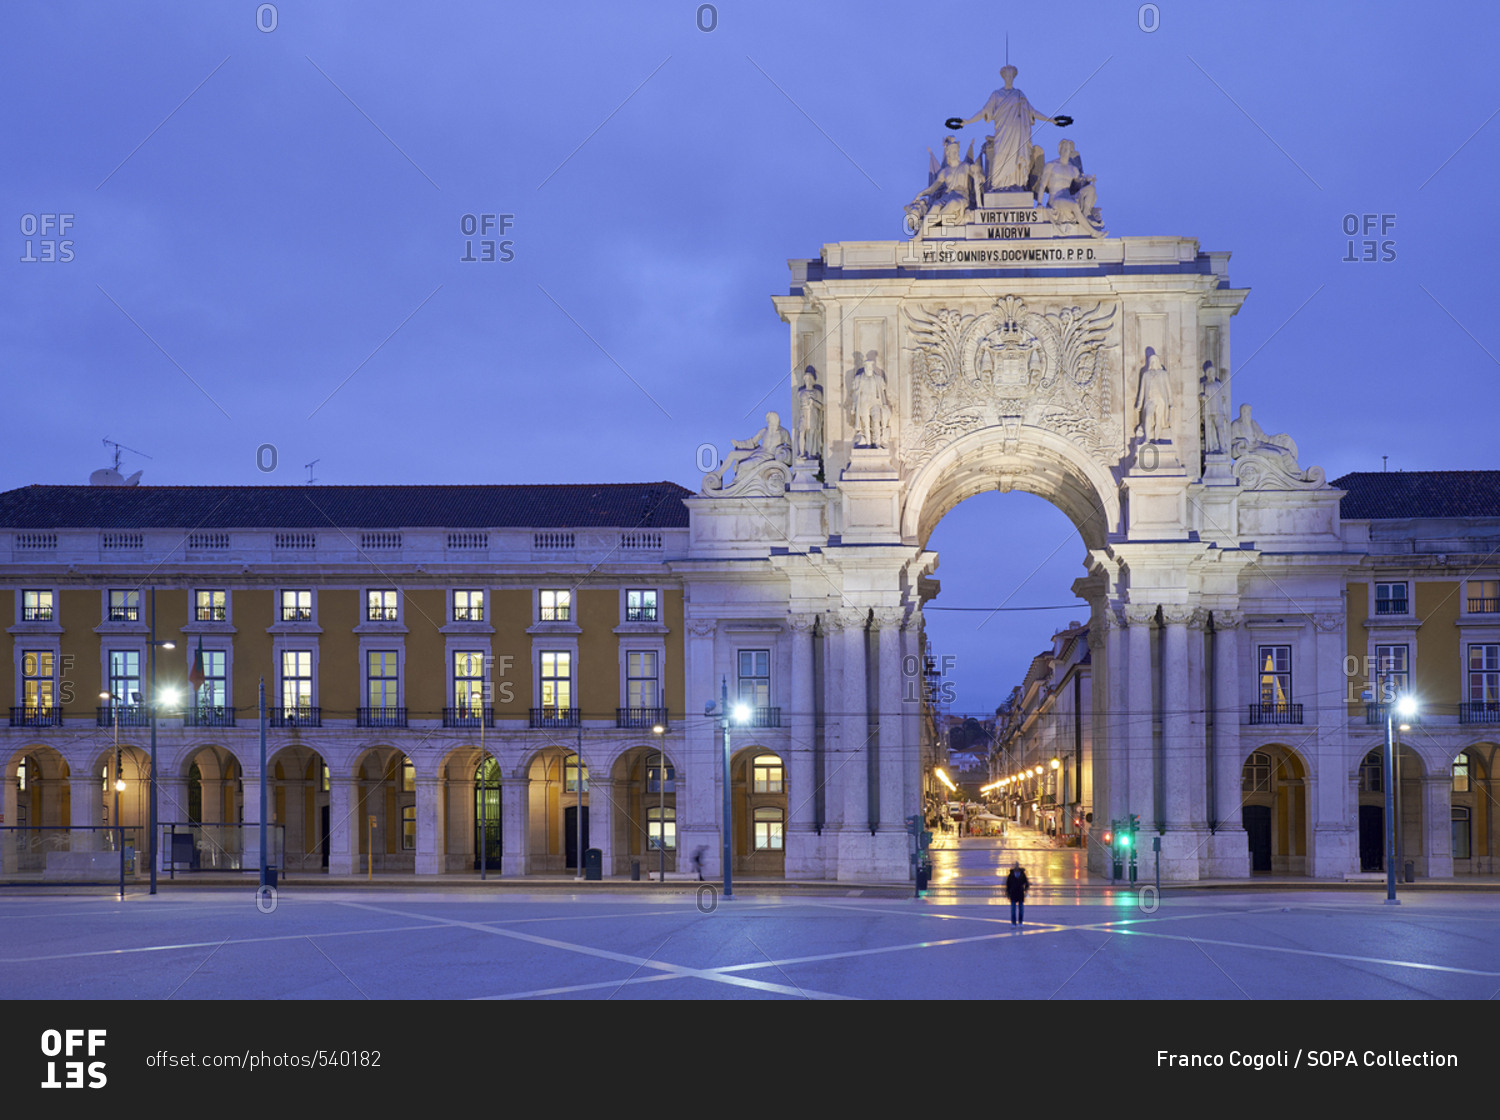 Praca do Comercio (square) - The Arco da Rua Augusta at dawn